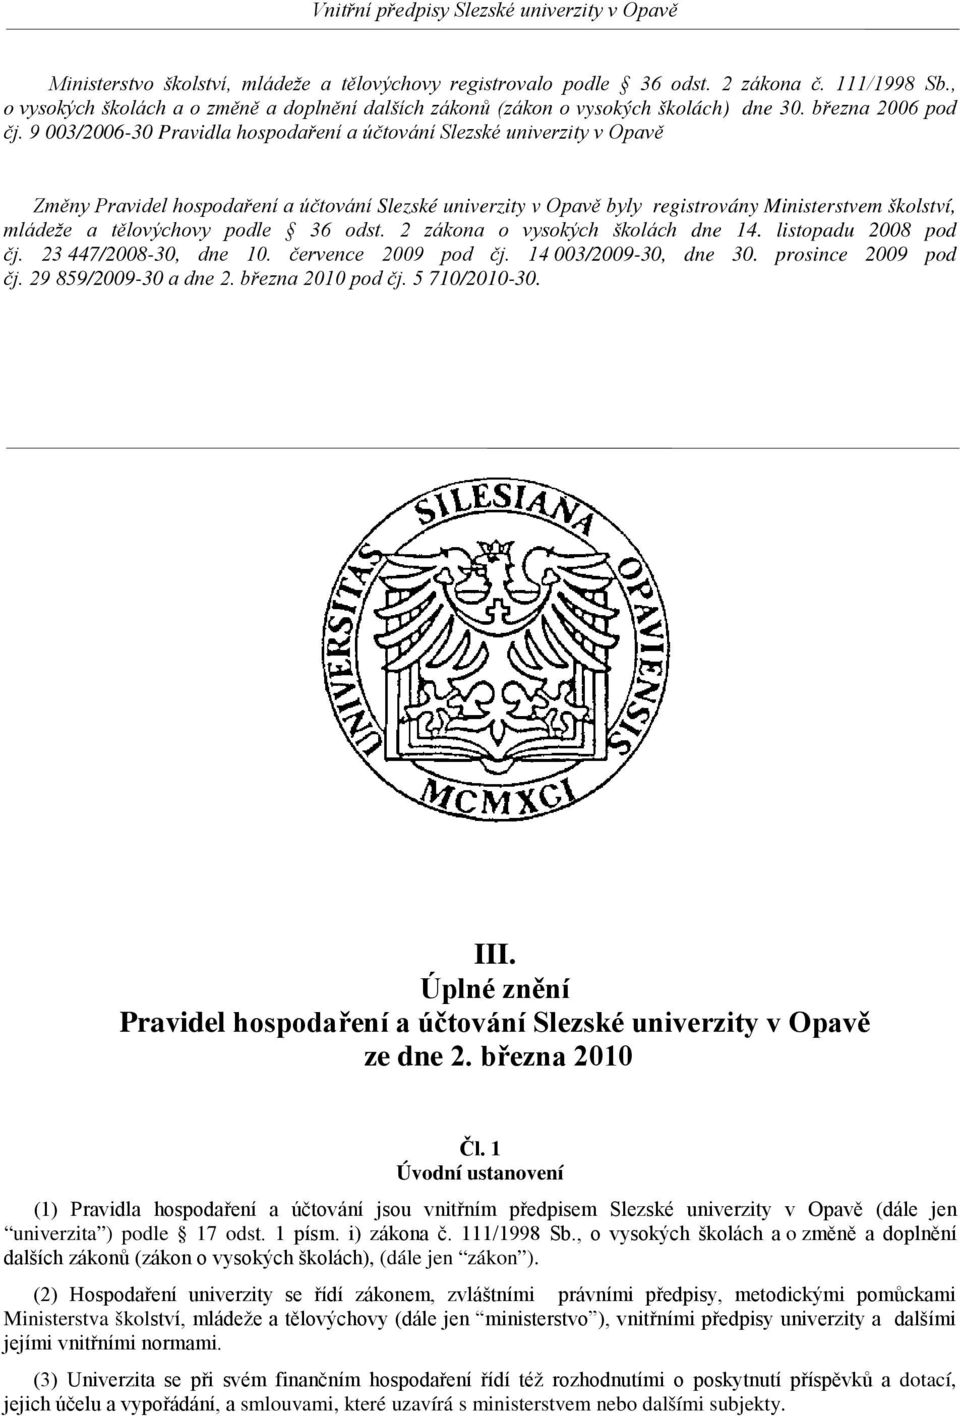 9 003/2006-30 Pravidla hospodaření a účtování Slezské univerzity v Opavě Změny Pravidel hospodaření a účtování Slezské univerzity v Opavě byly registrovány Ministerstvem školství, mládeže a